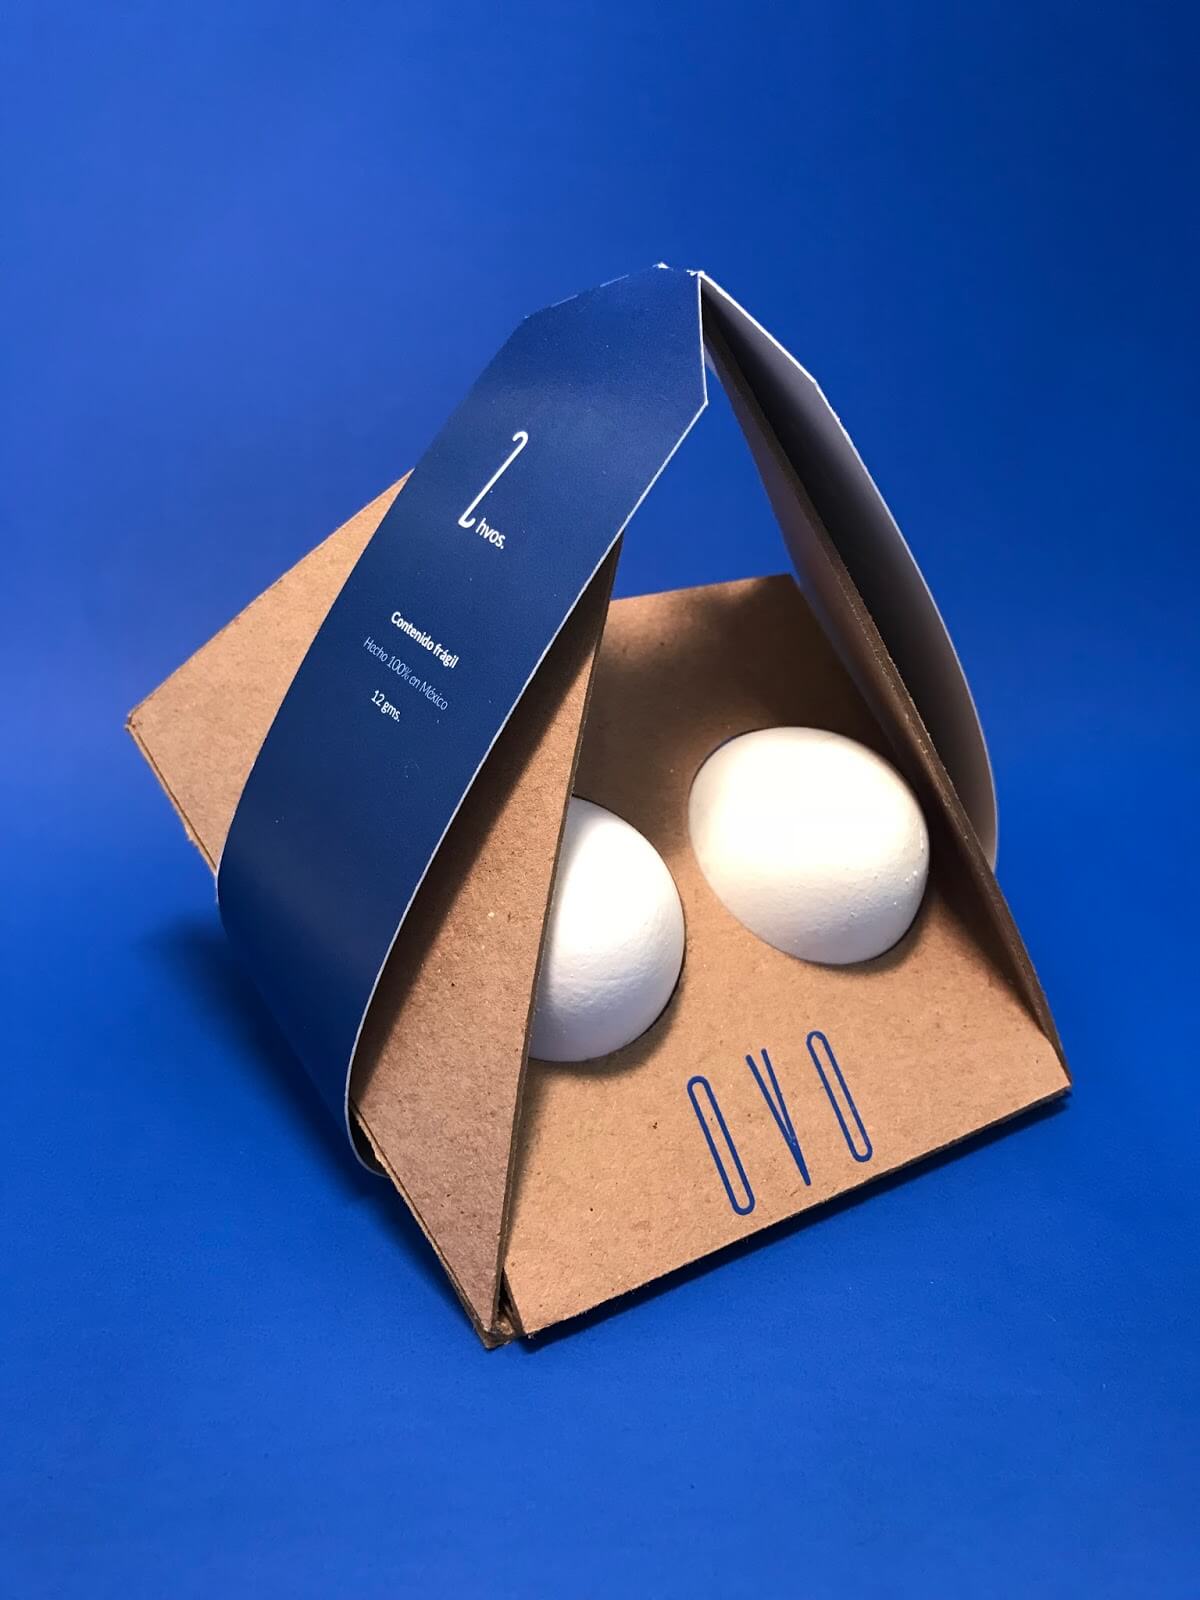 กล่องกระดาษ ธรรมดาโลกไม่จำ กล่องใส่ไข่สุดเจ๋งจากผลงานนักเรียน